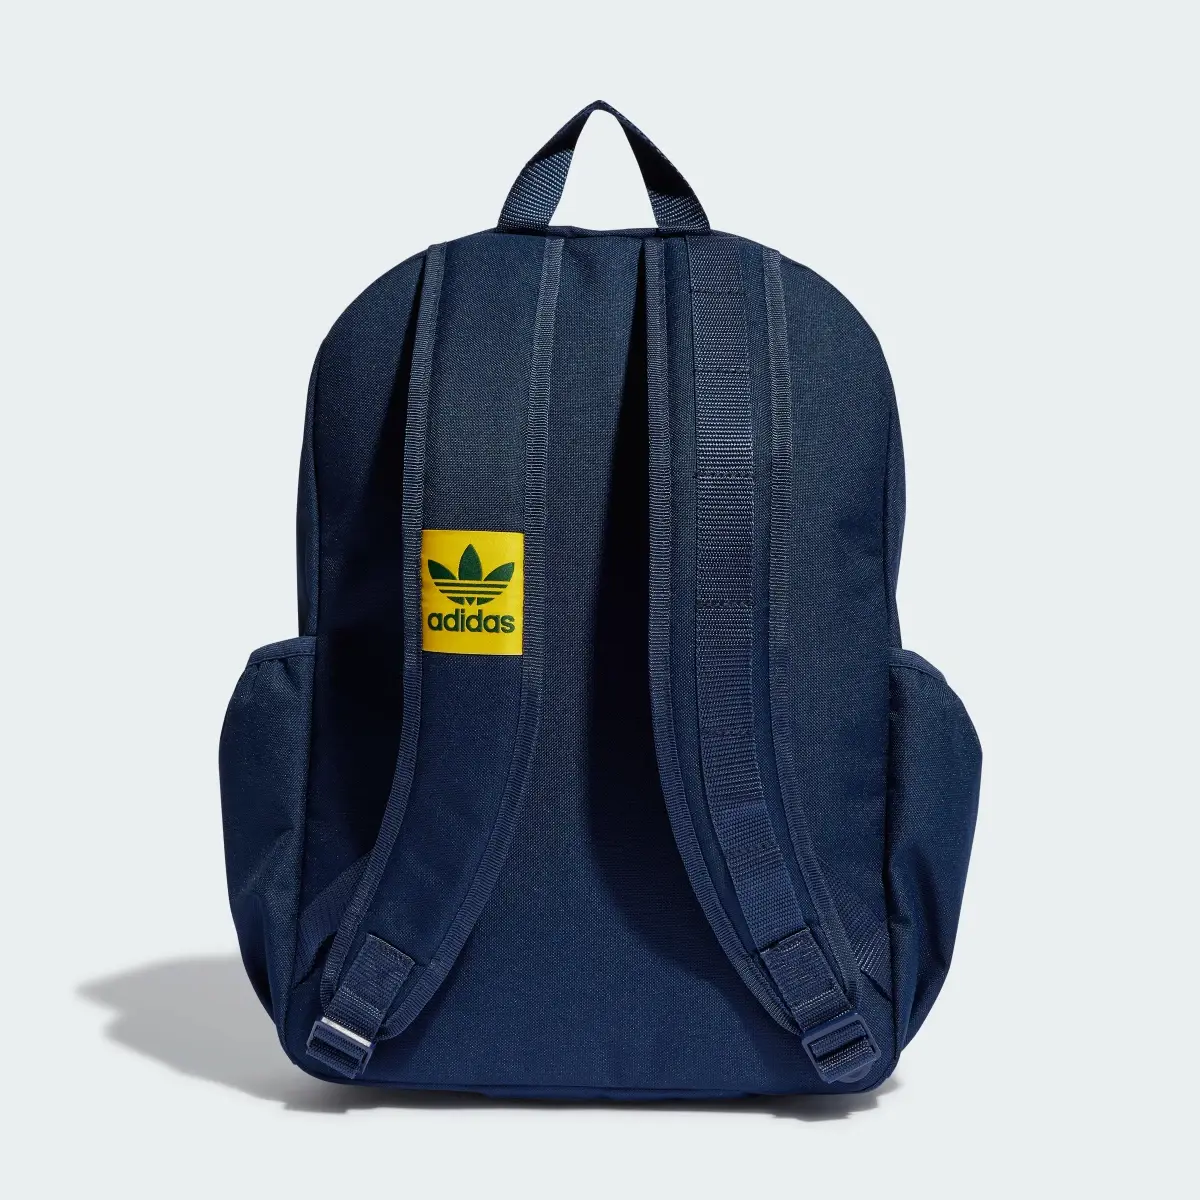 Adidas VRST Backpack. 3